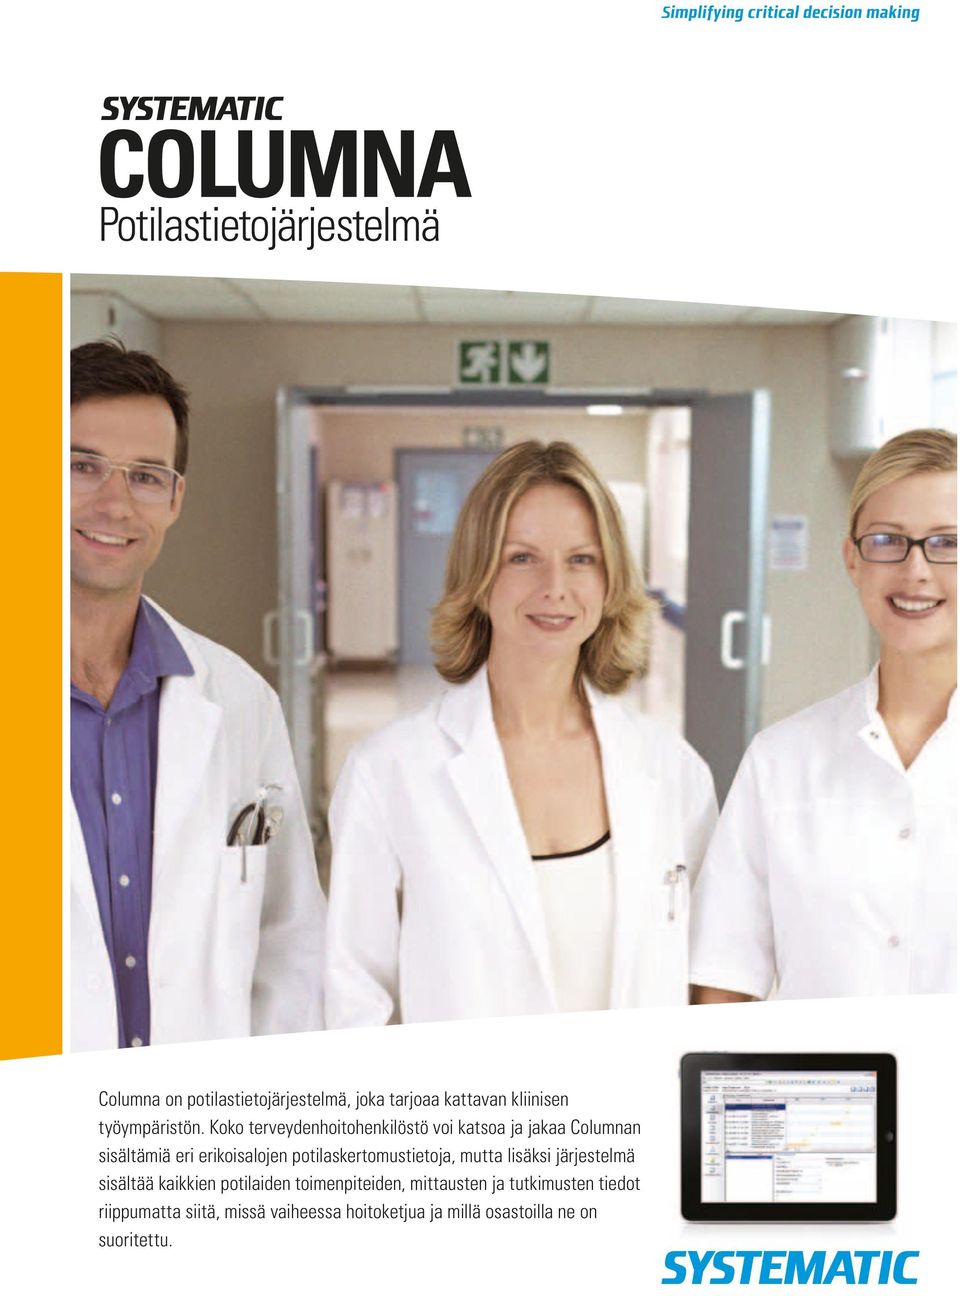 Koko terveydenhoitohenkilöstö voi katsoa ja jakaa Columnan sisältämiä eri erikoisalojen